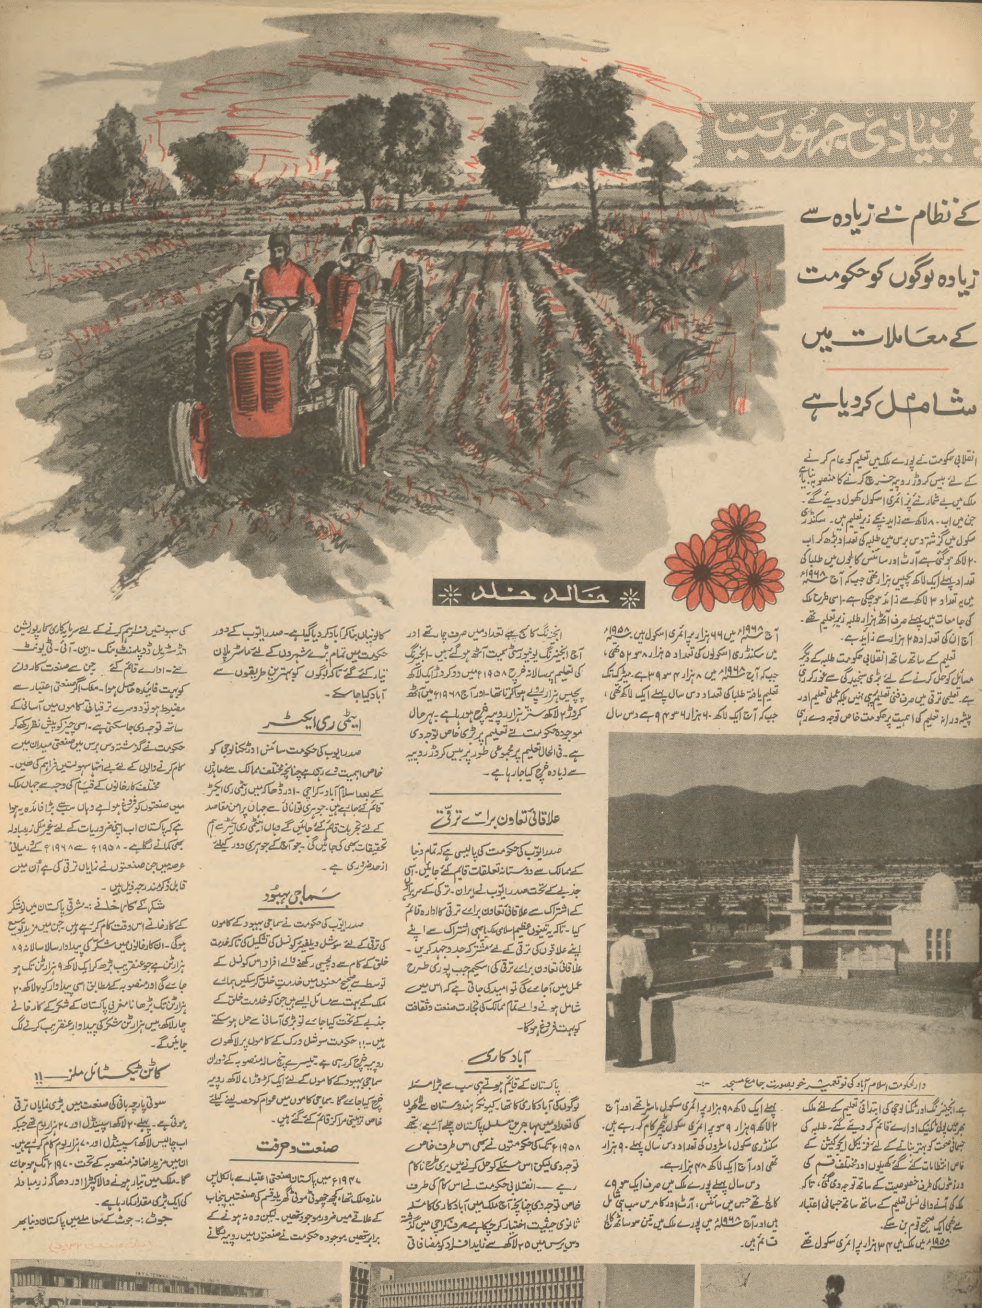 Akhbar-e-Jahan (Oct 7, 1968) - KHAJISTAN™